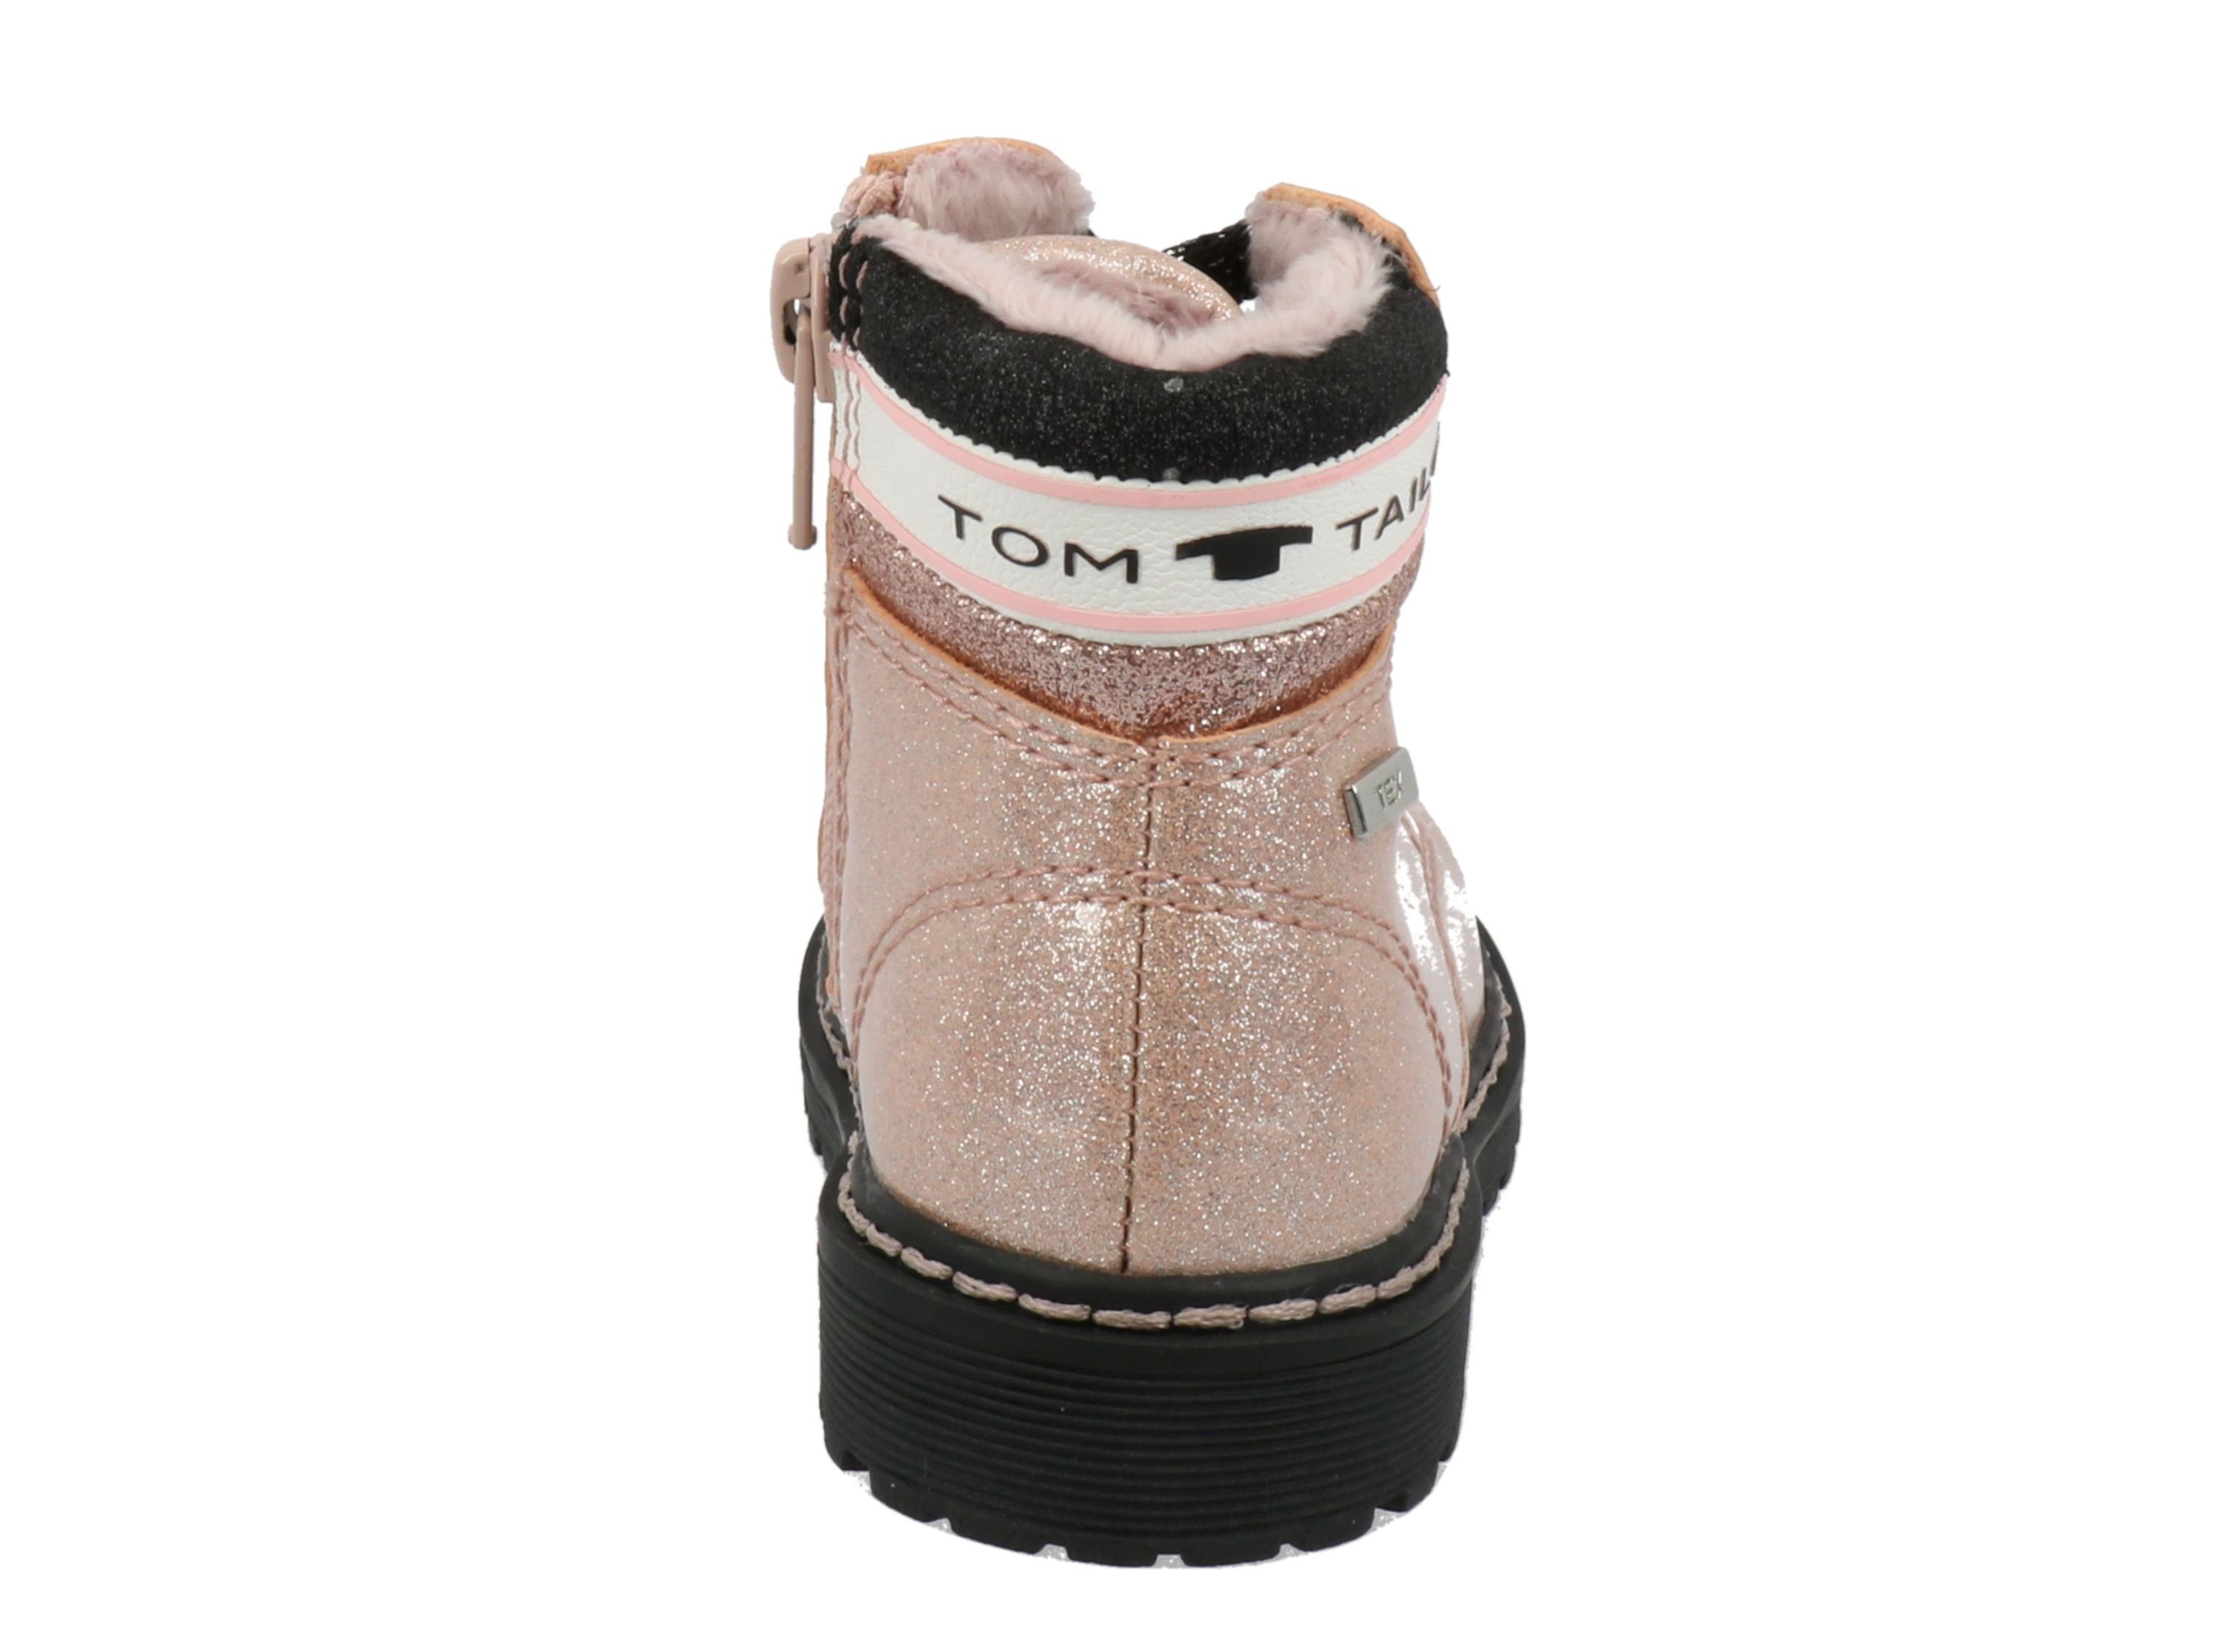 TOM TAILOR Tom Mädchen Kids für Tailor Schnürschuh mit Stiefel Warmfutter